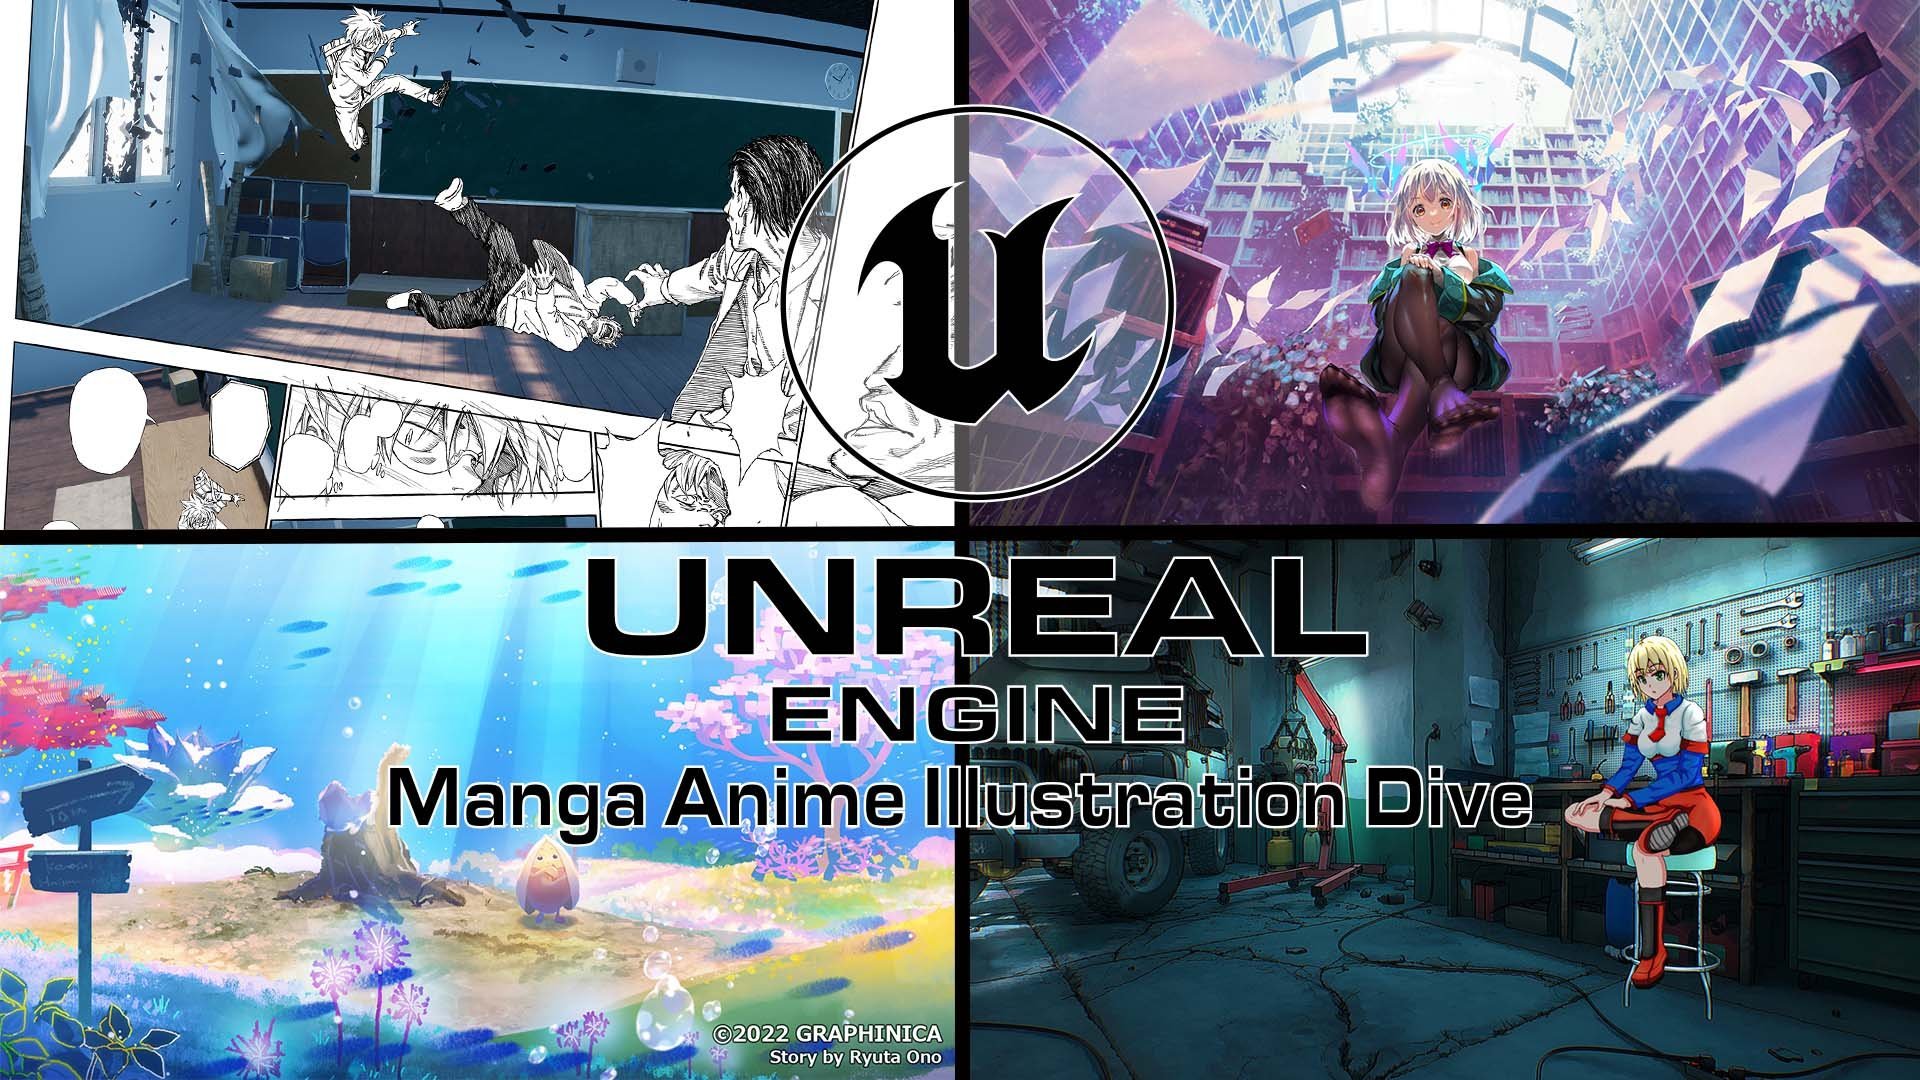 Ue4でマンガやアニメ イラスト制作に挑戦するための第一歩をサポート Ue4 Manga Anime Illustration Dive Online レポート